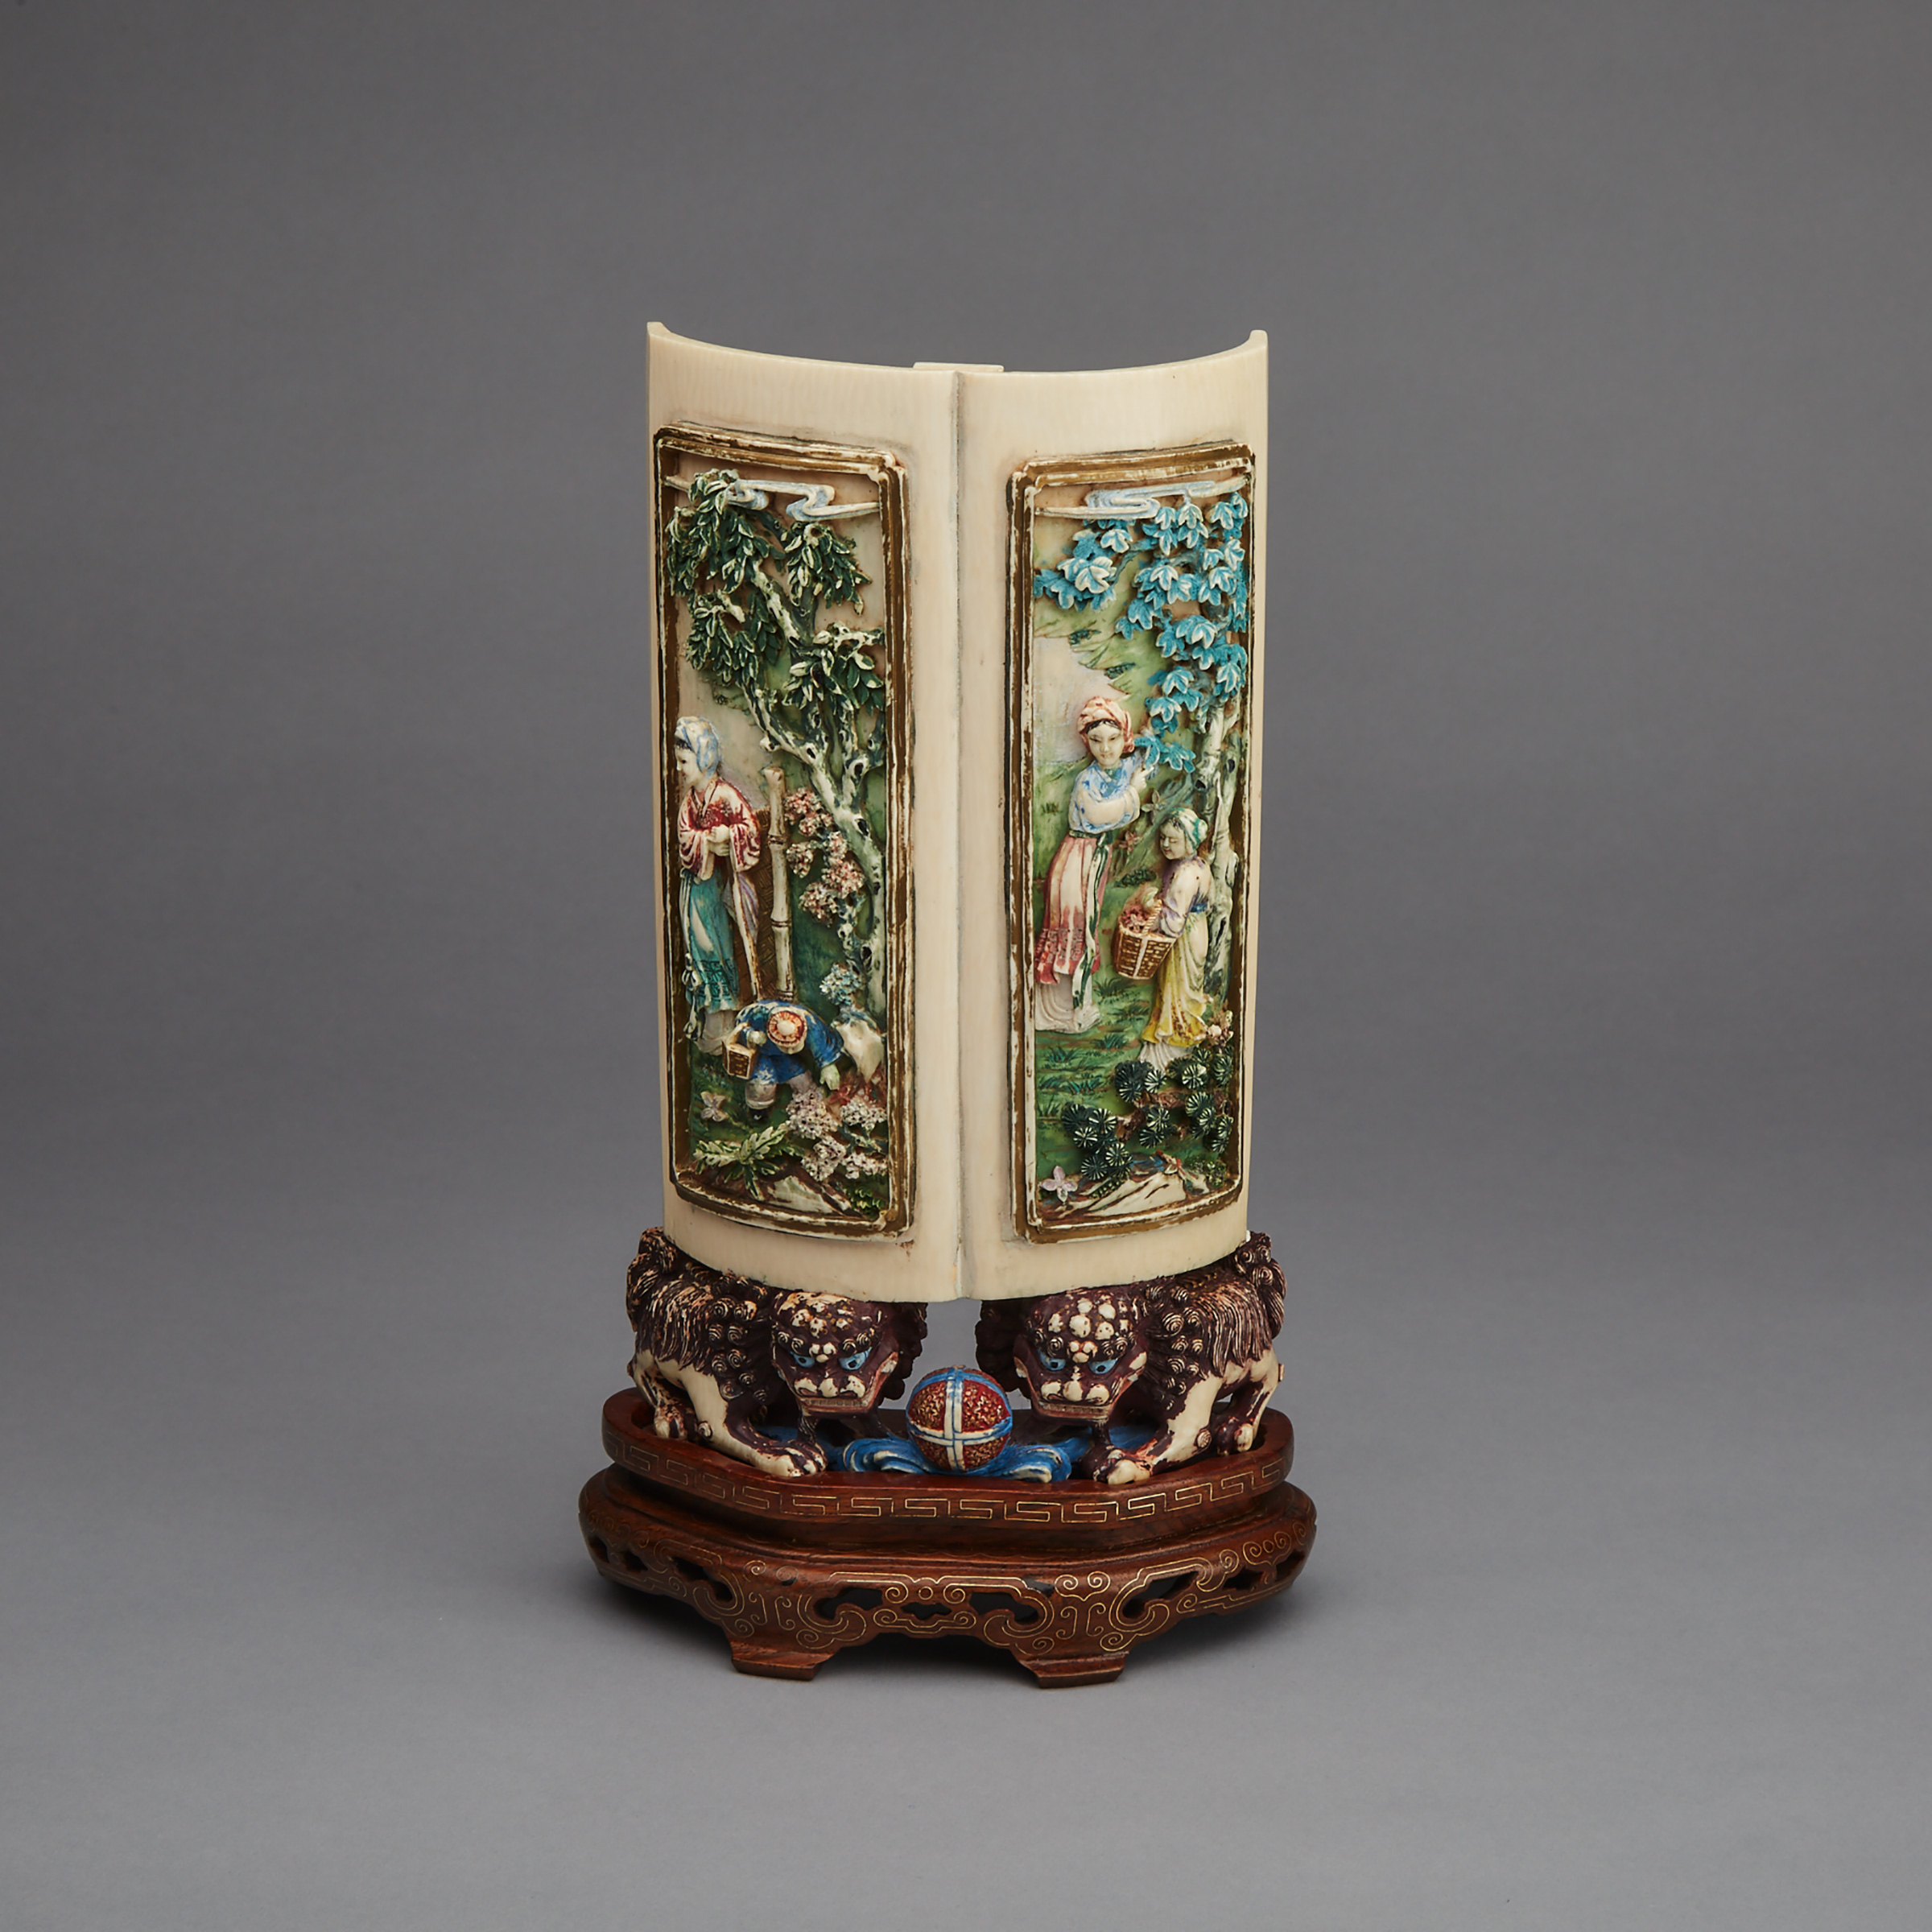 A Rare Polychrome Ivory ‘Gardens’ Panel, Circa 1900 